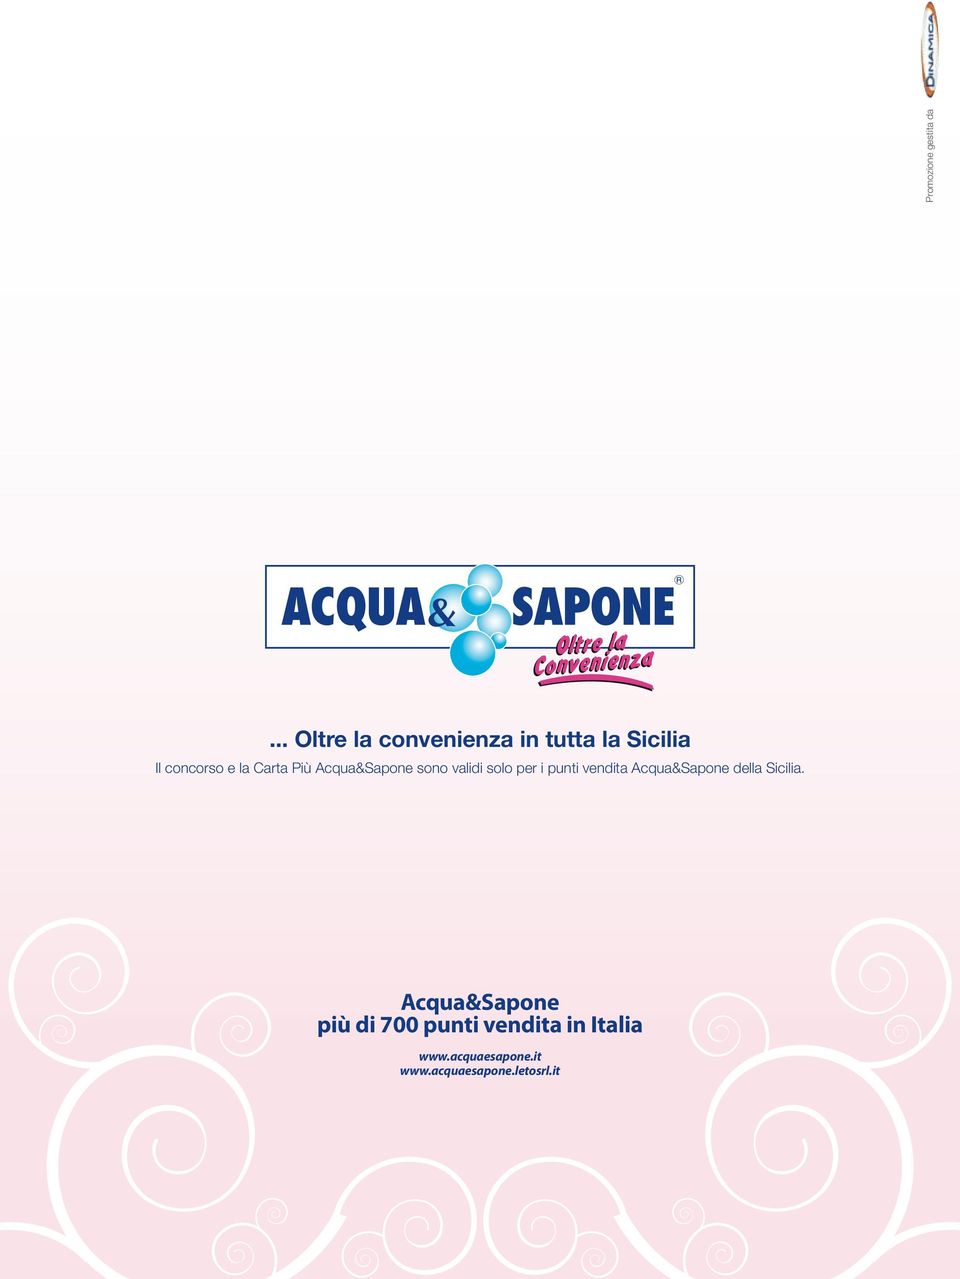 Più Acqua&Sapone sono validi solo per i punti vendita Acqua&Sapone